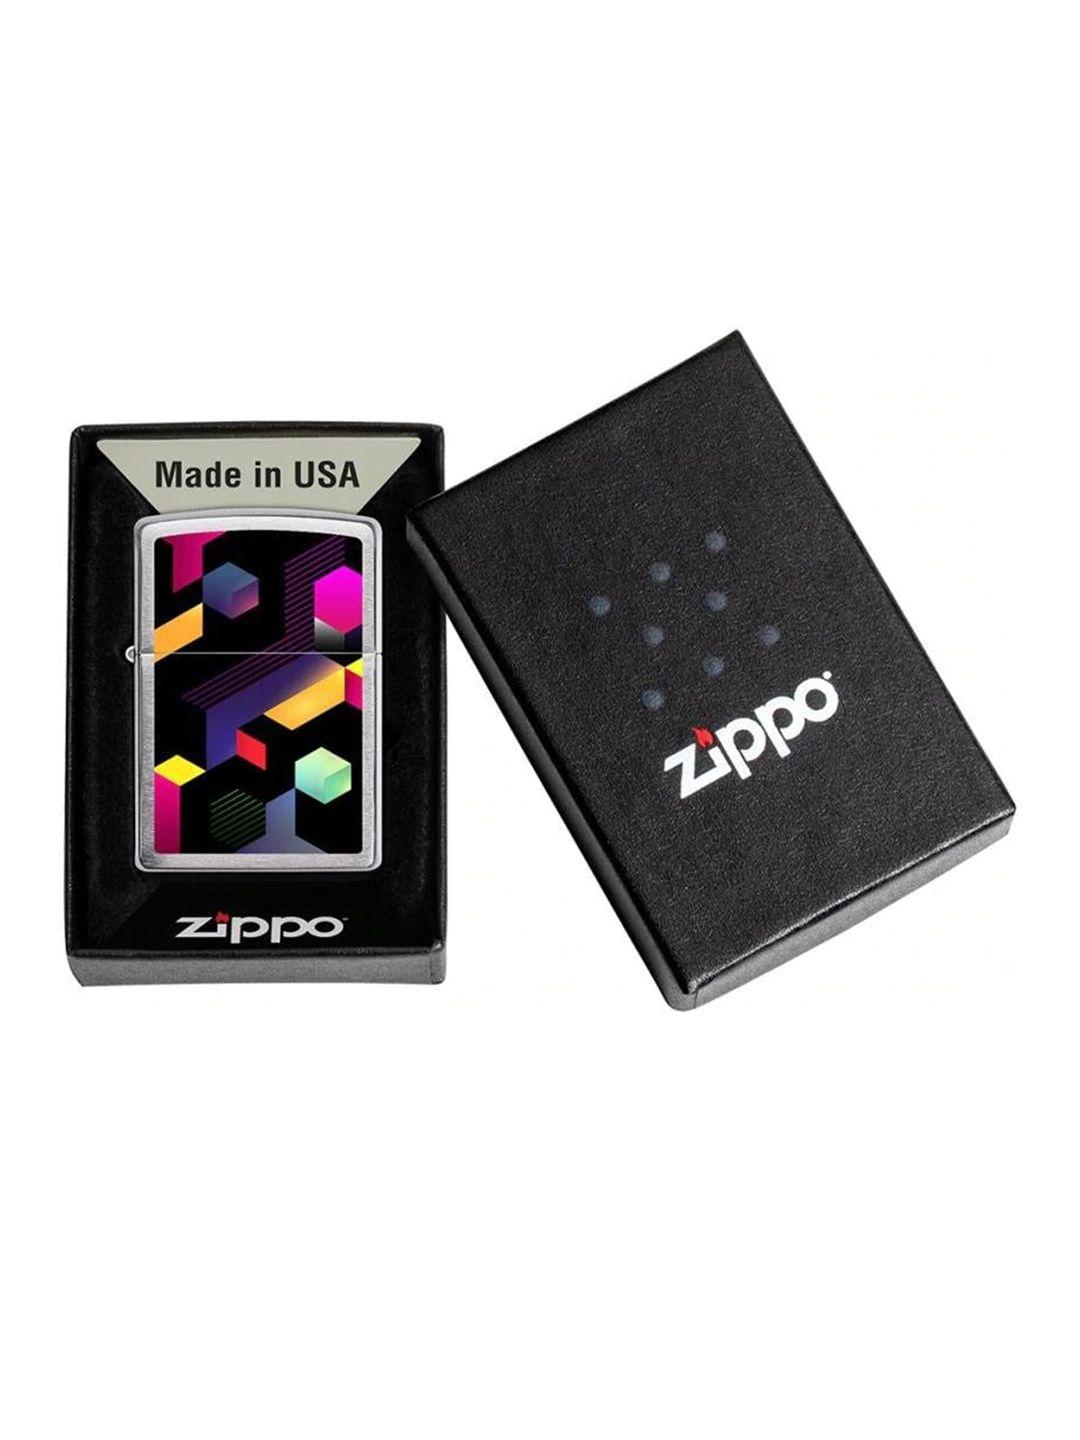 zippo neon block design brushed chrome pocket lighter